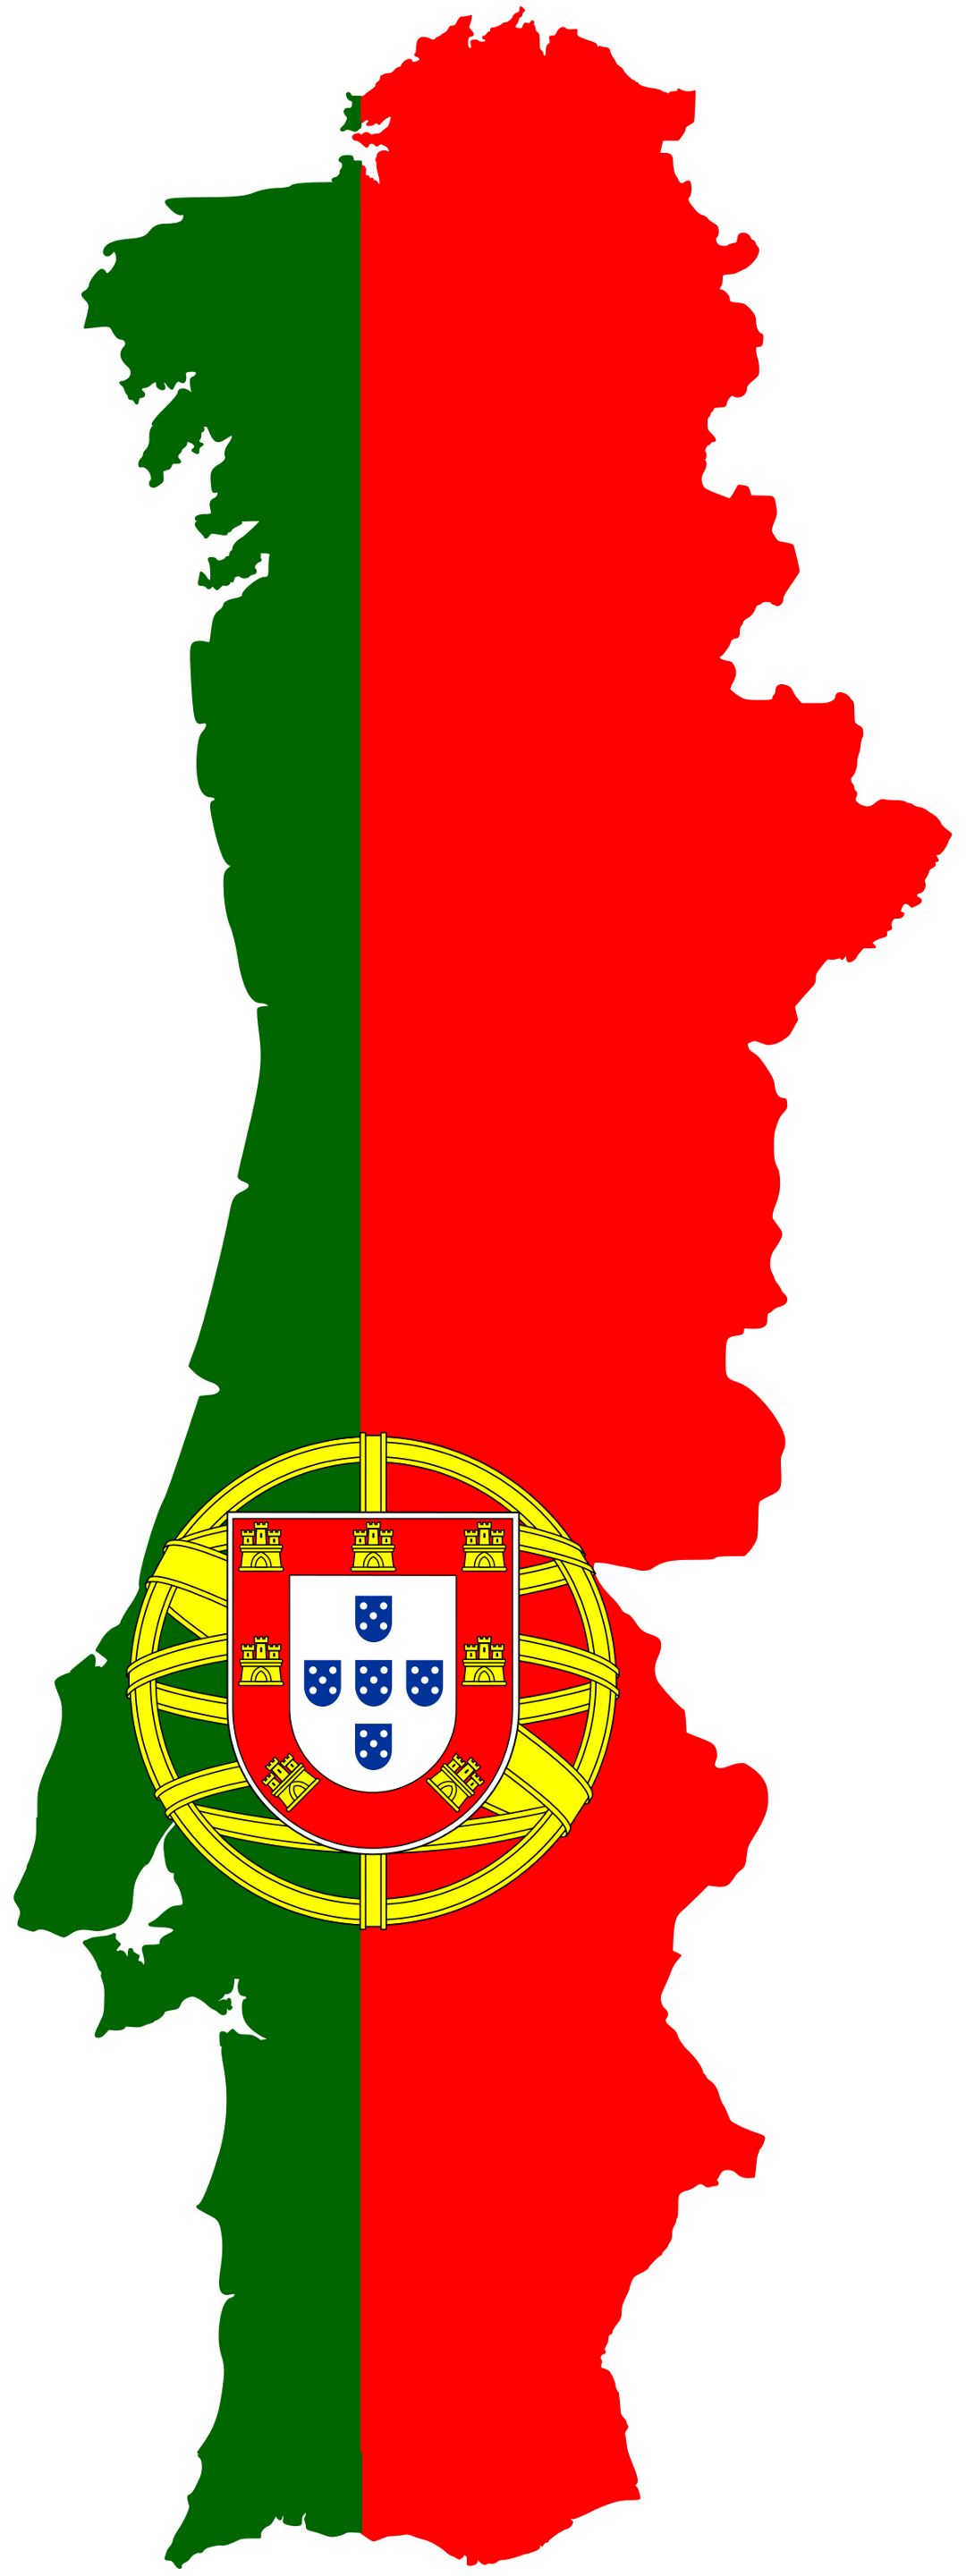 Grande bandera mapa de Portugal